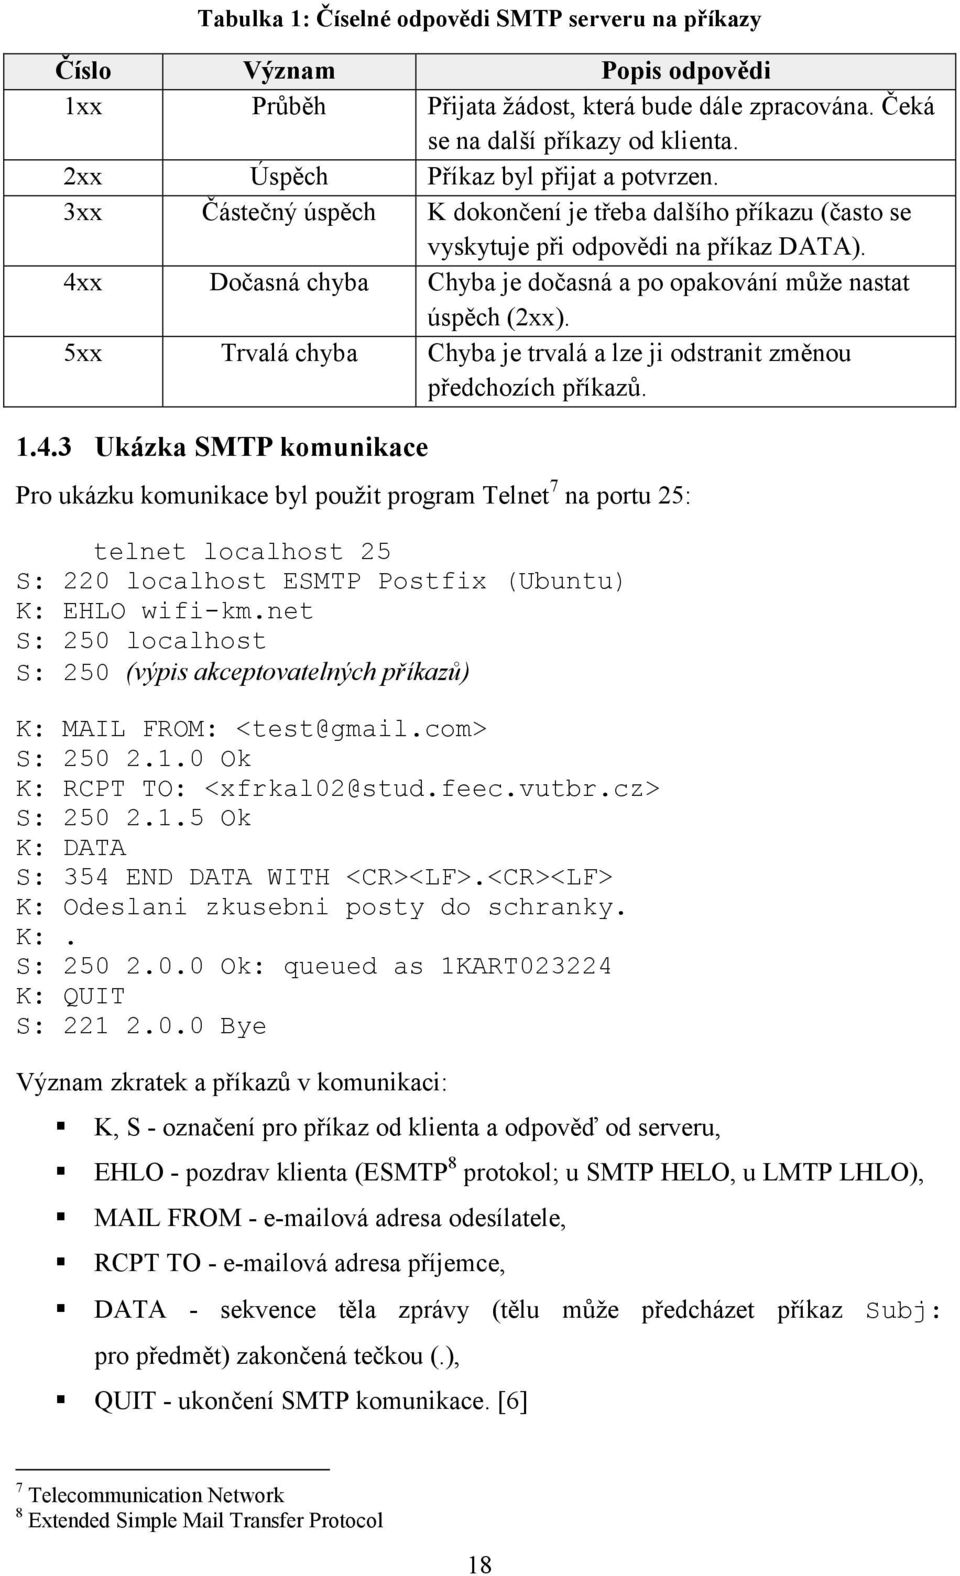 4xx Dočasná chyba Chyba je dočasná a po opakování může nastat úspěch (2xx). 5xx Trvalá chyba Chyba je trvalá a lze ji odstranit změnou předchozích příkazů. 1.4.3 Ukázka SMTP komunikace Pro ukázku komunikace byl použit program Telnet 7 na portu 25: telnet localhost 25 S: 220 localhost ESMTP Postfix (Ubuntu) K: EHLO wifi-km.